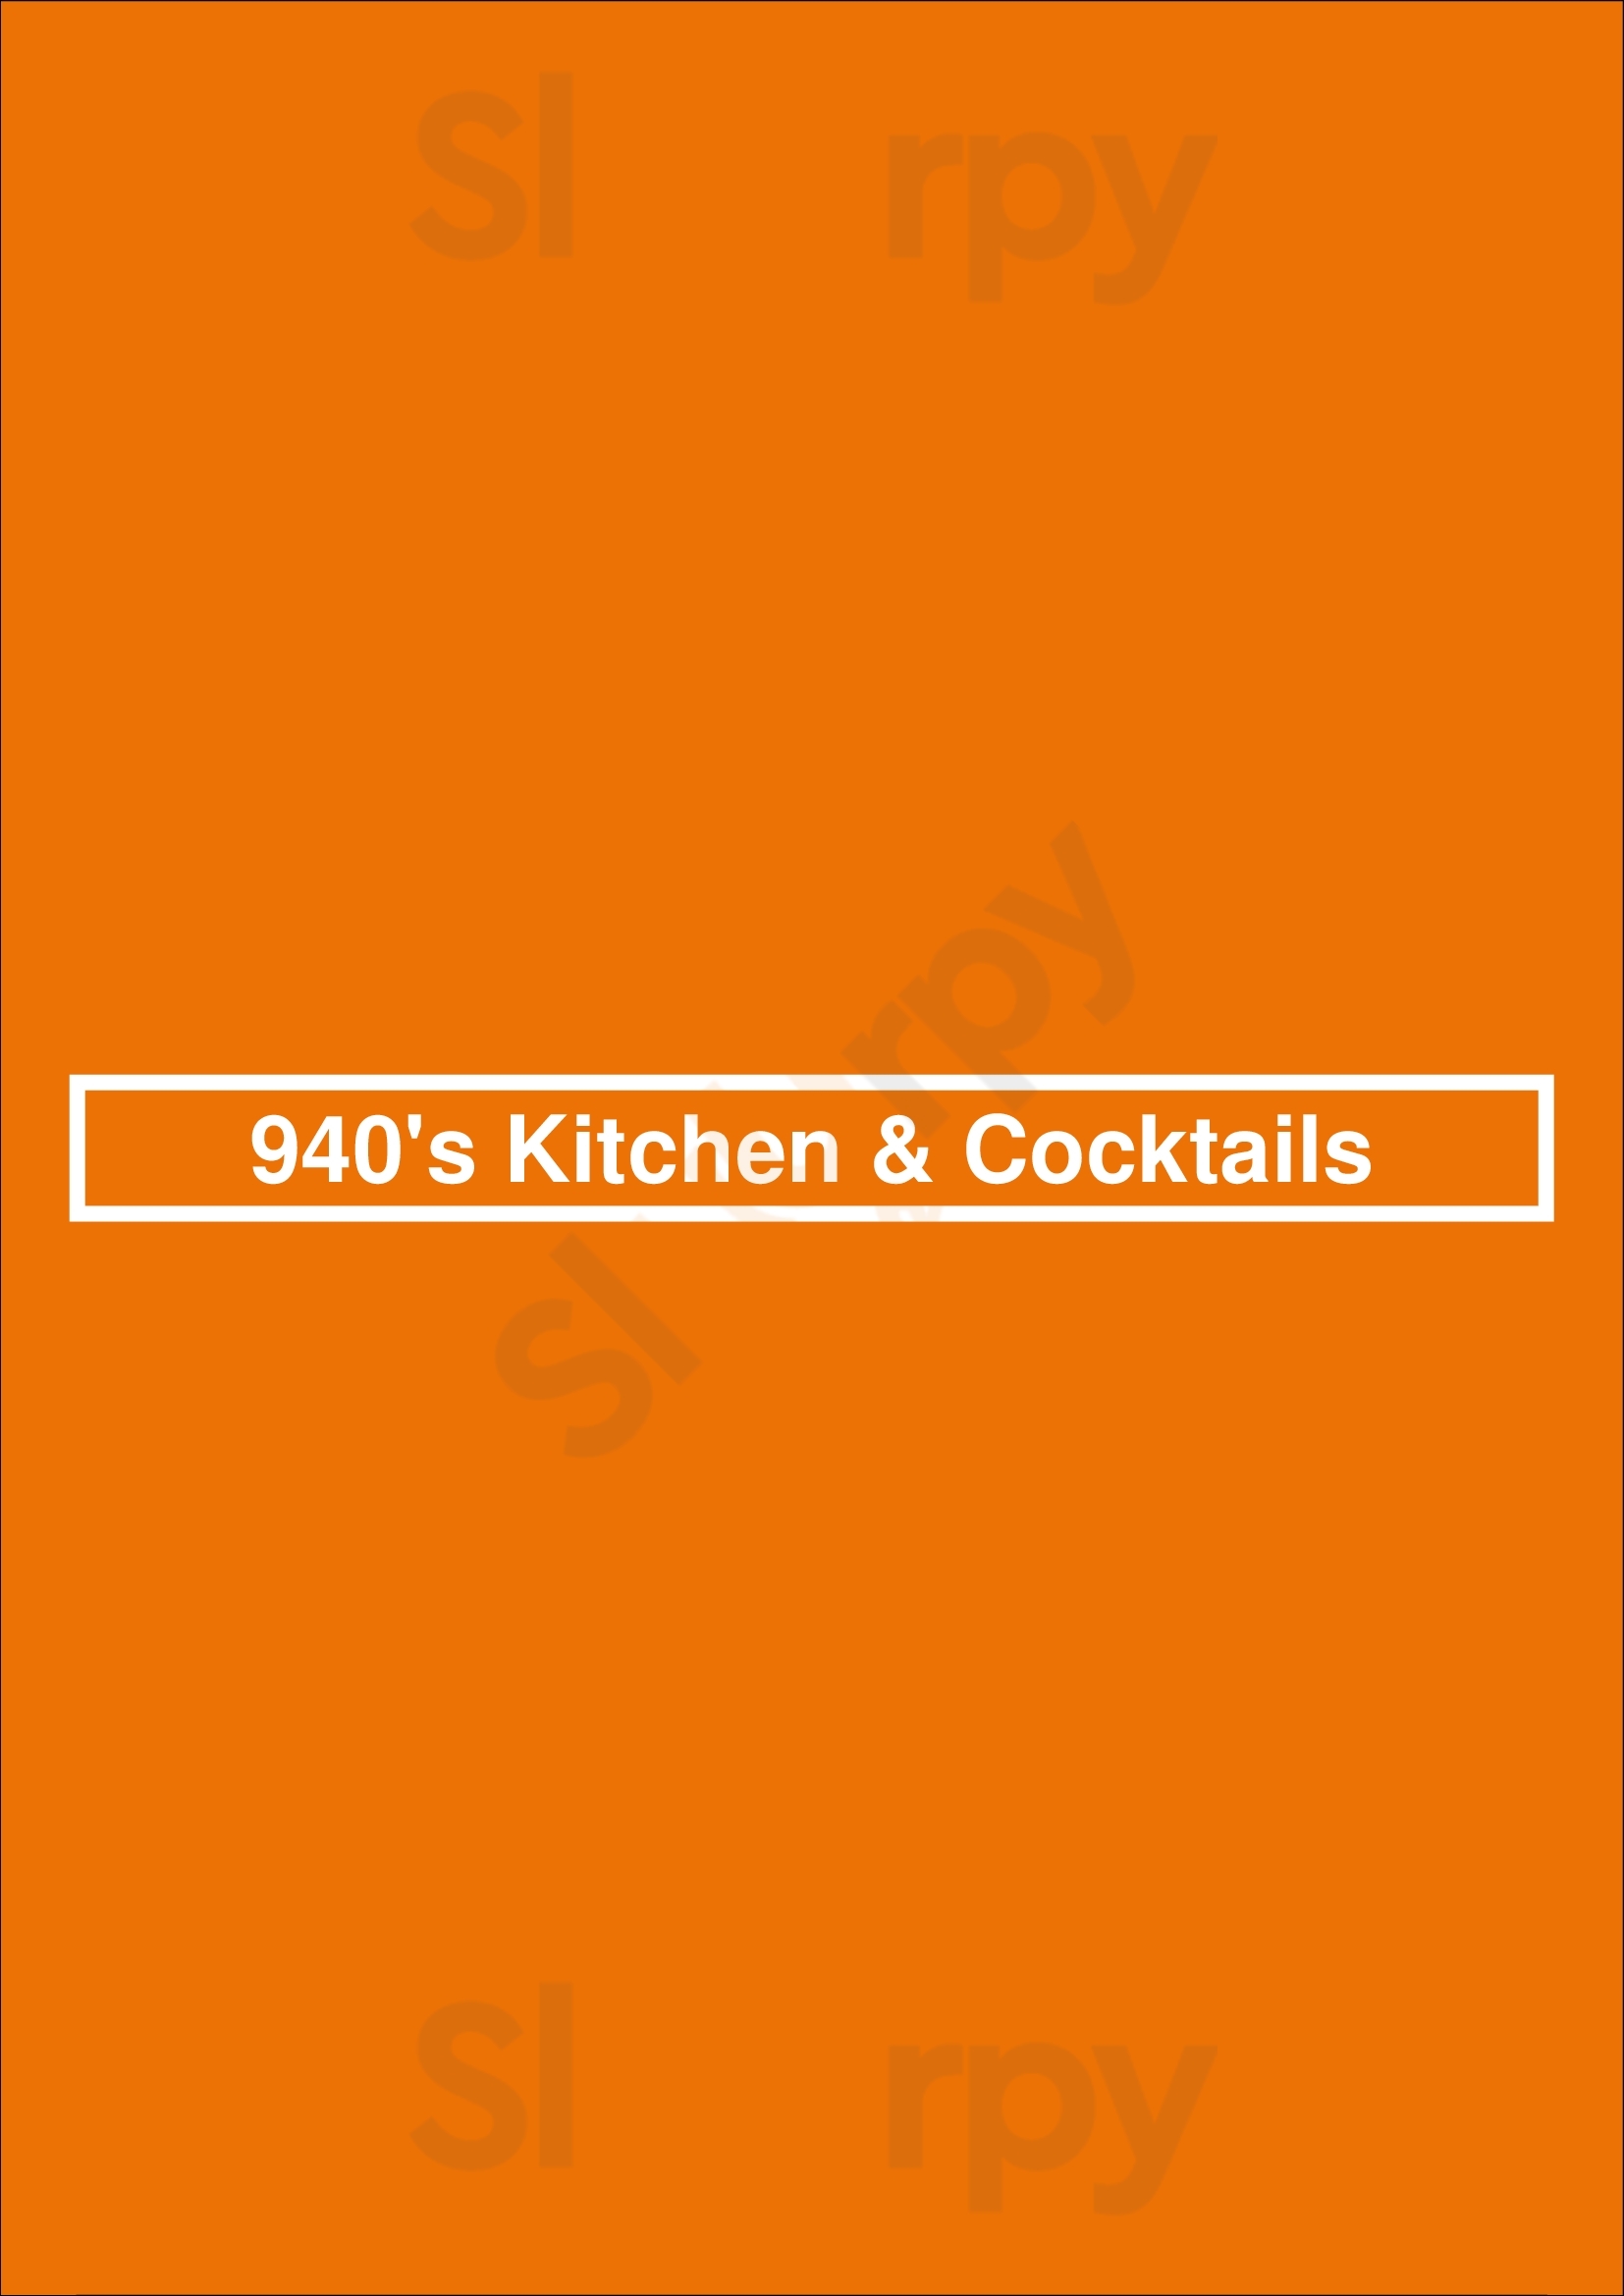 940's Kitchen & Cocktails Denton Menu - 1